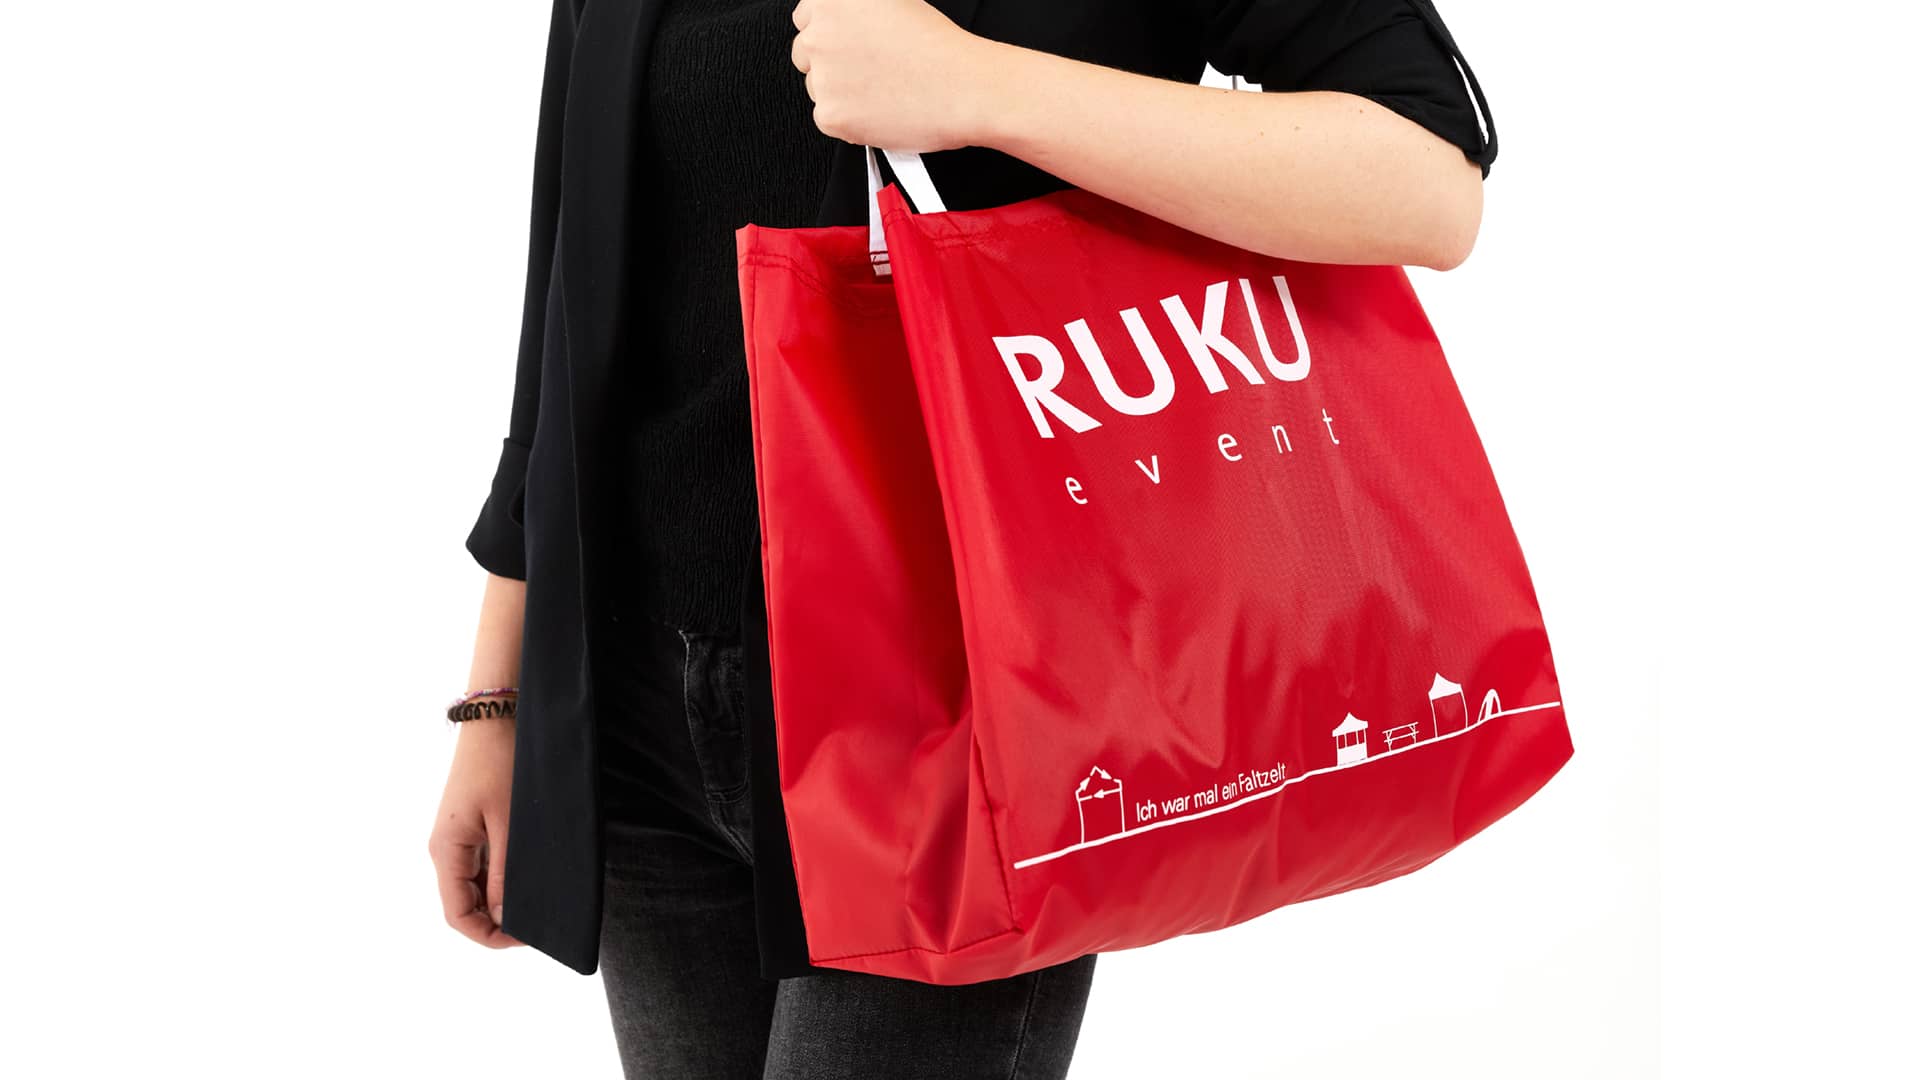 Die nachhaltige RUKUevent Einkaufstasche in der Farbe rot wird von einer Person um die Schulter getragen.